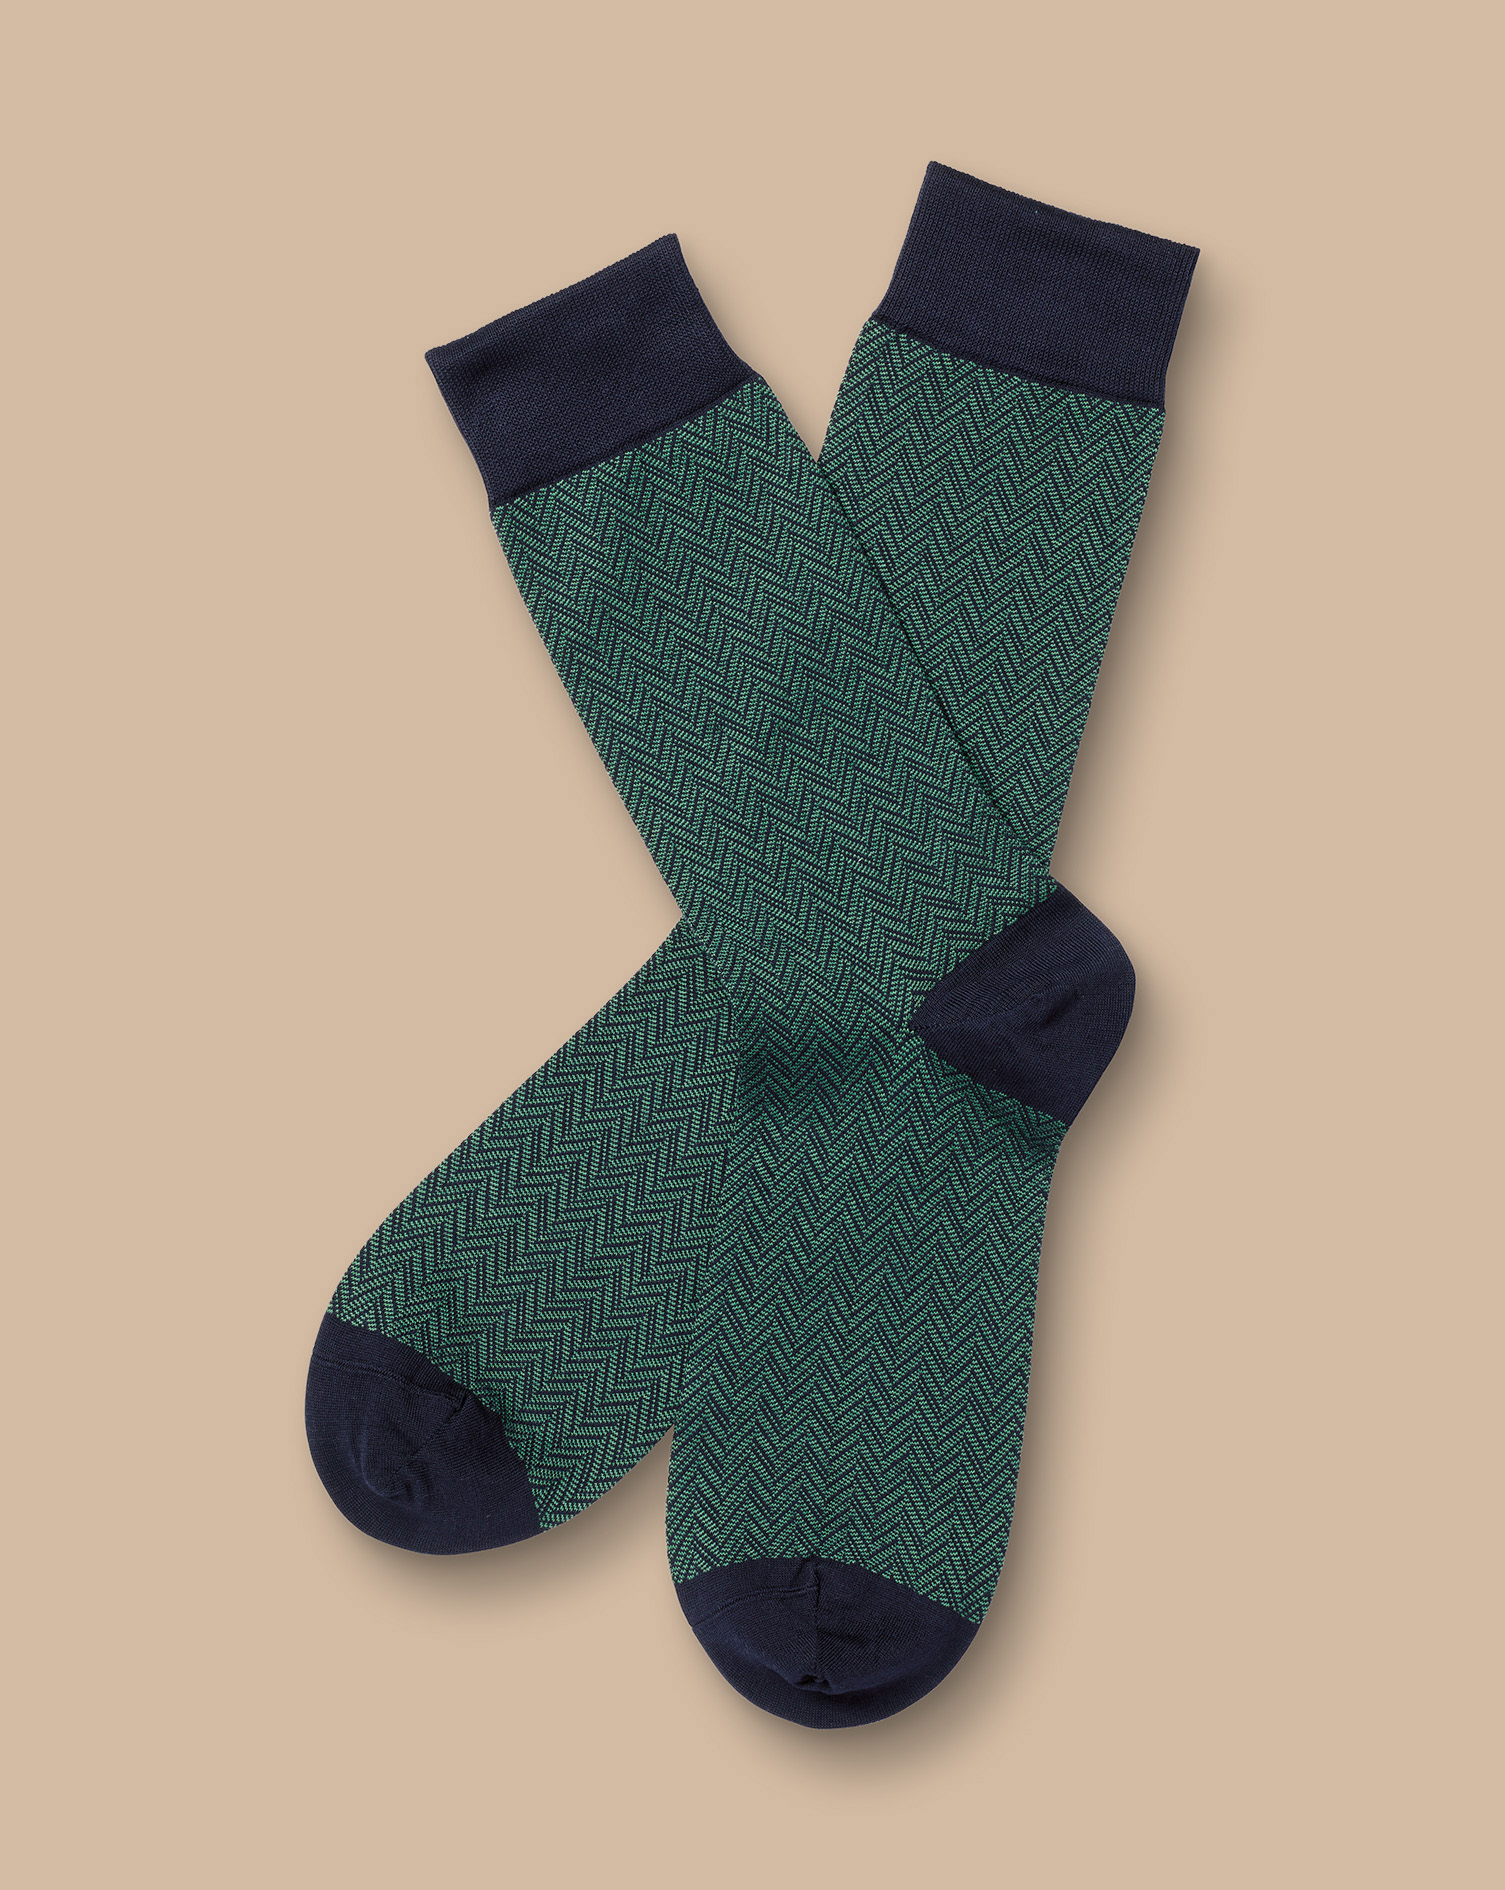 Men's Charles Tyrwhitt Chevron Socks - Green & Navy Size 10.5-13 Cotton
